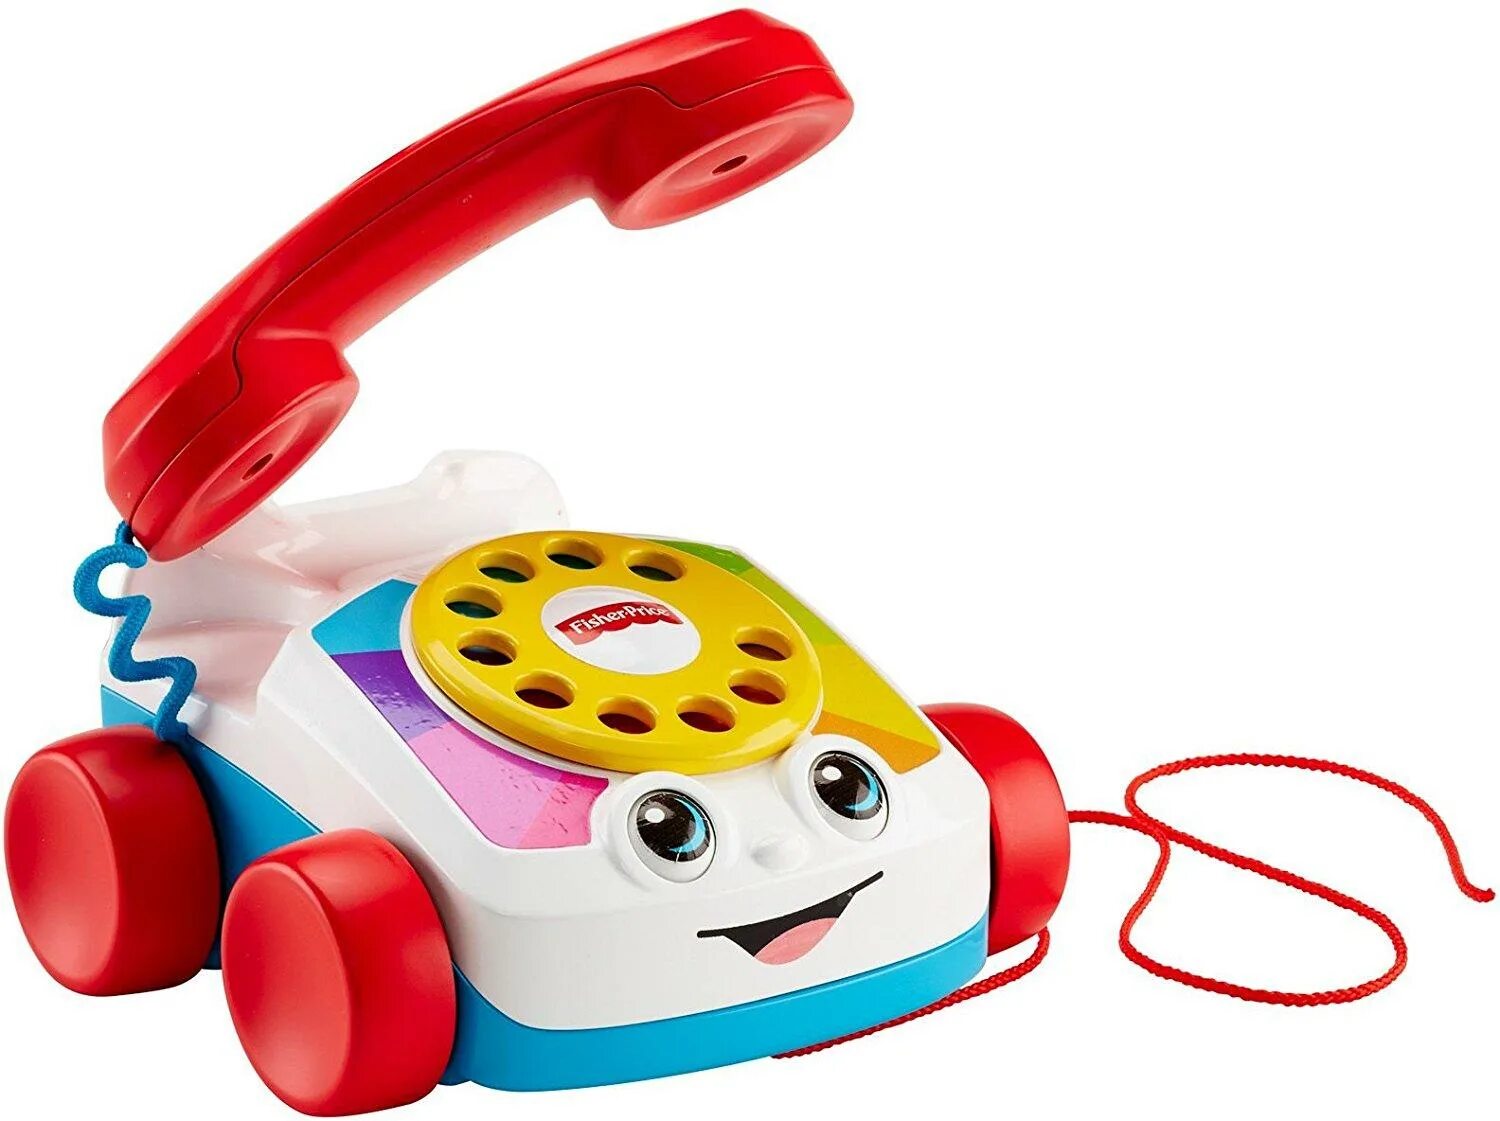 Веселый телефон. Fisher-Price Chatter telephone. Телефончик для детей Fisher Price. Fisher Price плеер. Каталка-игрушка Joy Toy телефончик на колесах (7068) со звуковыми эффектами.